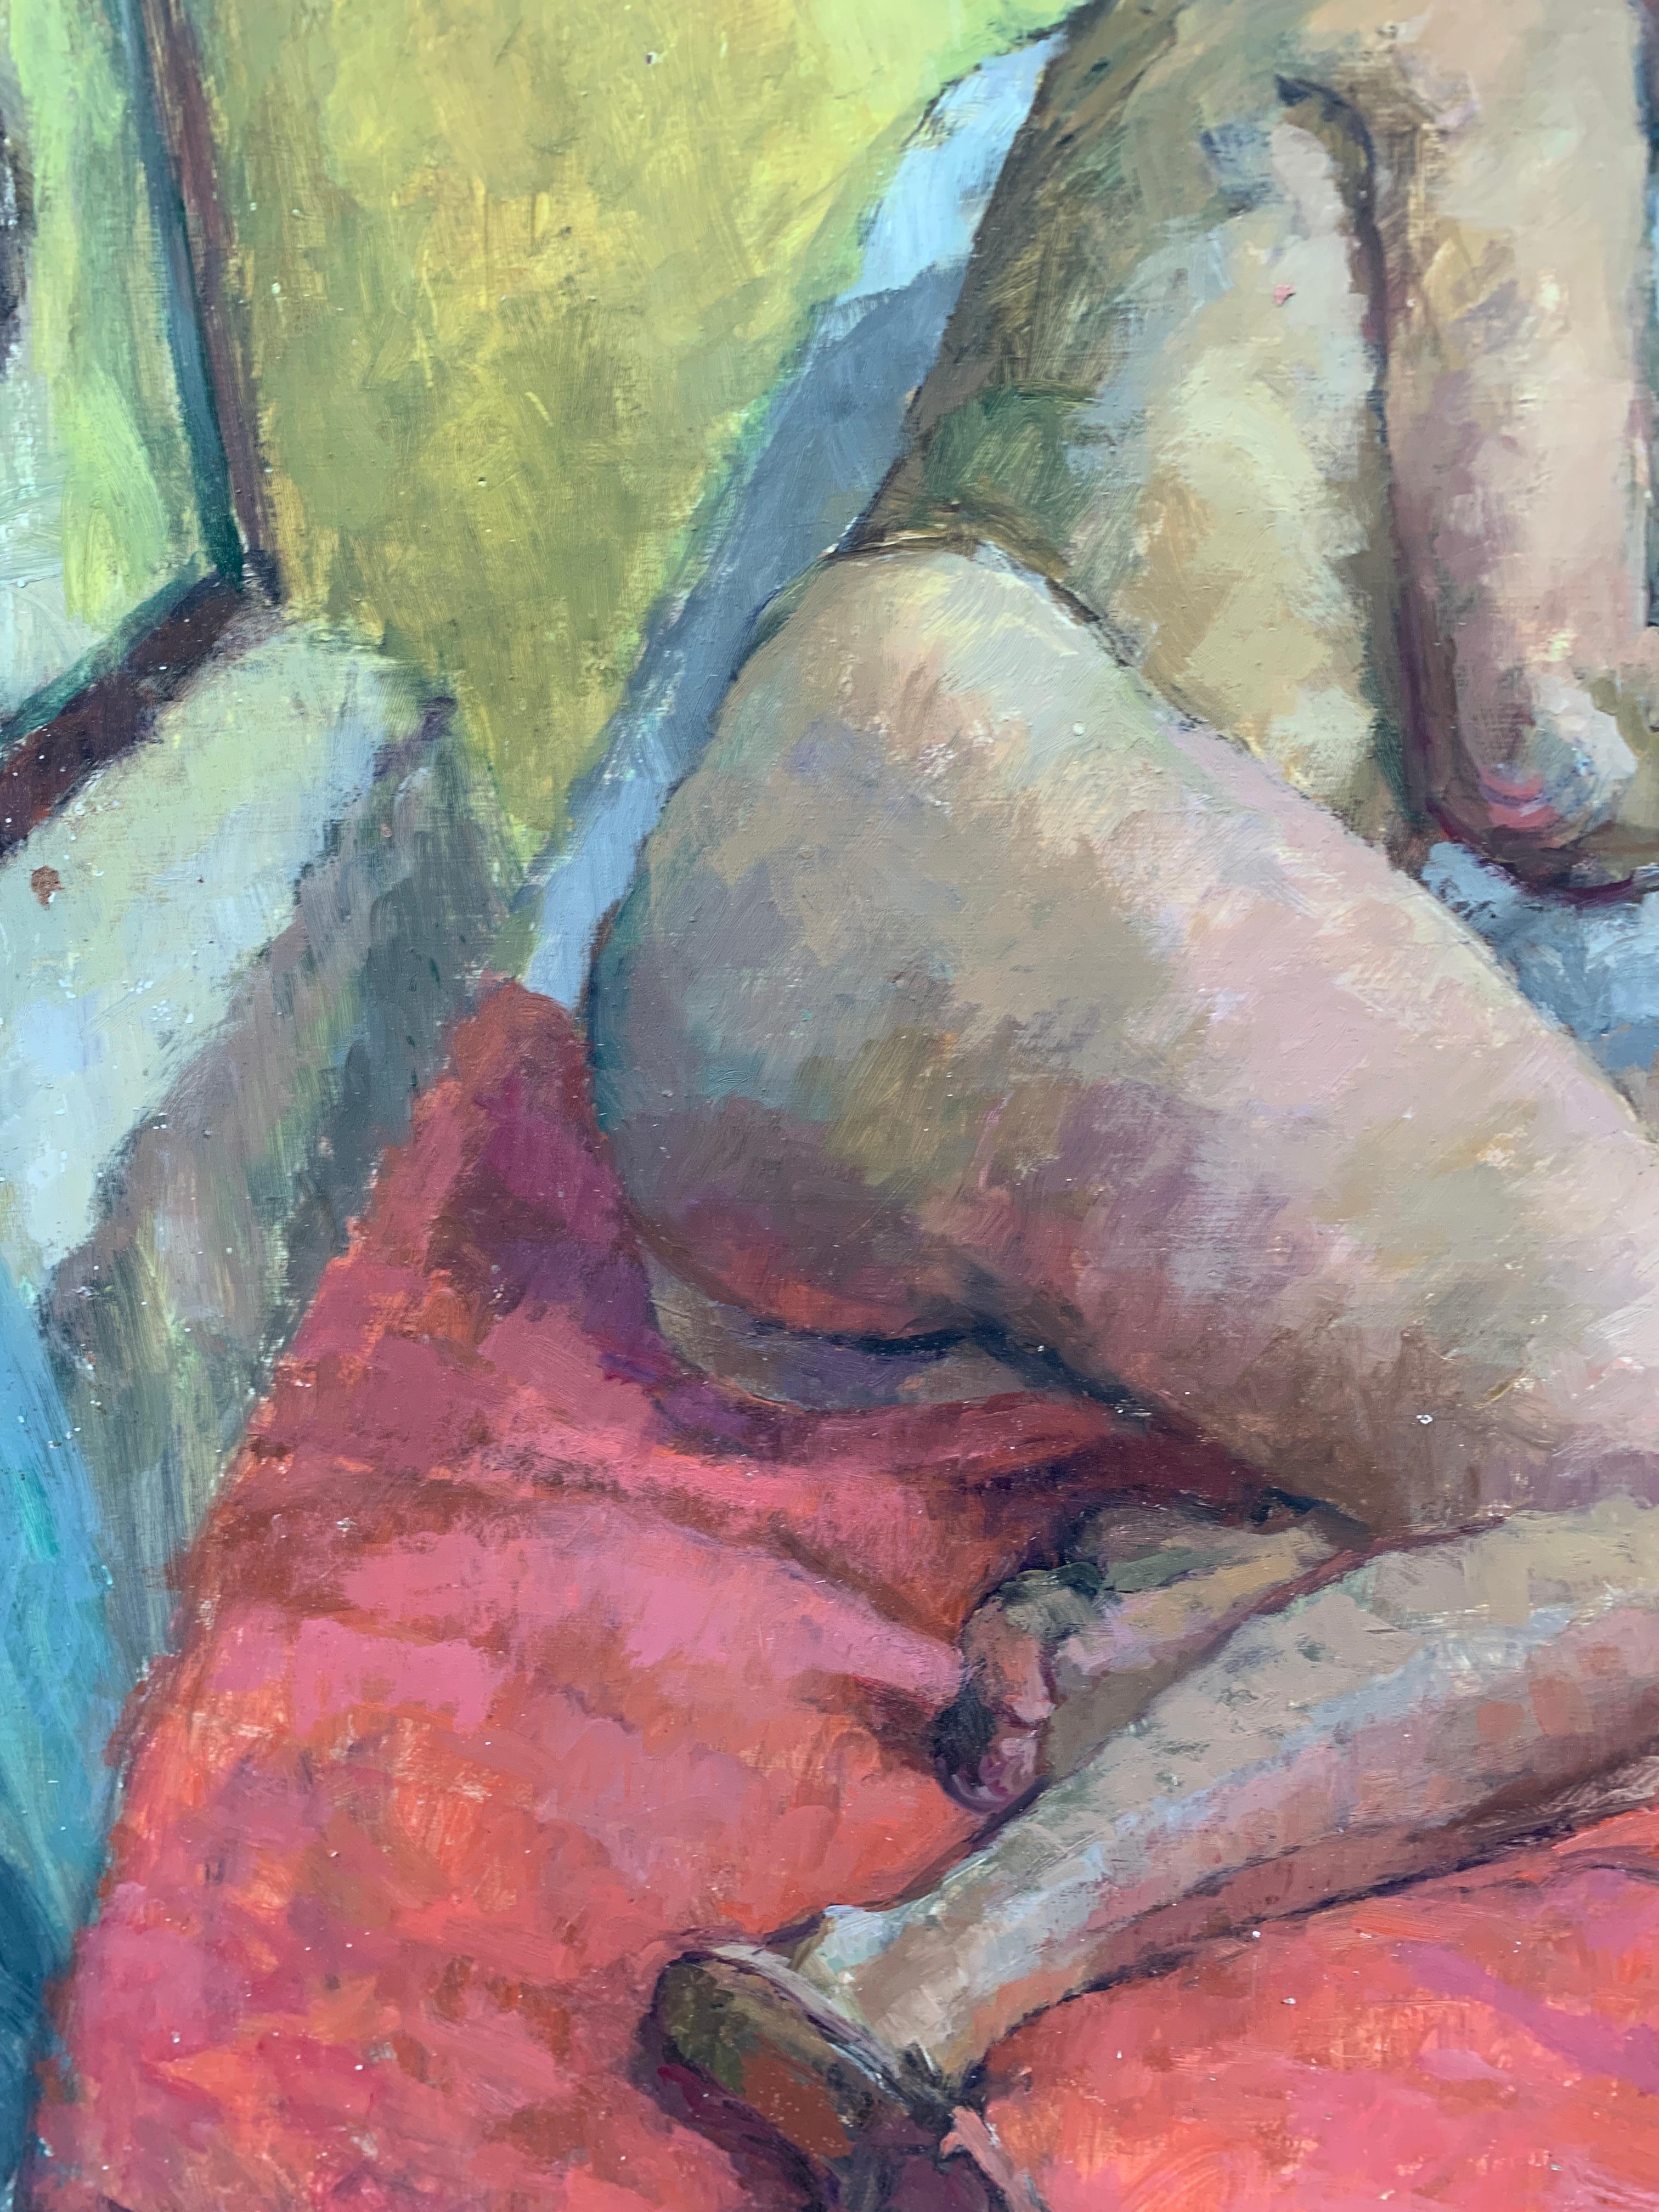 Portrait anglais des années 1950 bien peint, de style moderne du milieu du siècle, d'une femme nue allongée sur un lit.

L'artiste était un portraitiste et un peintre figuratif actif dans les années 1950-1960

Huiles sur carton d'artiste

D'une